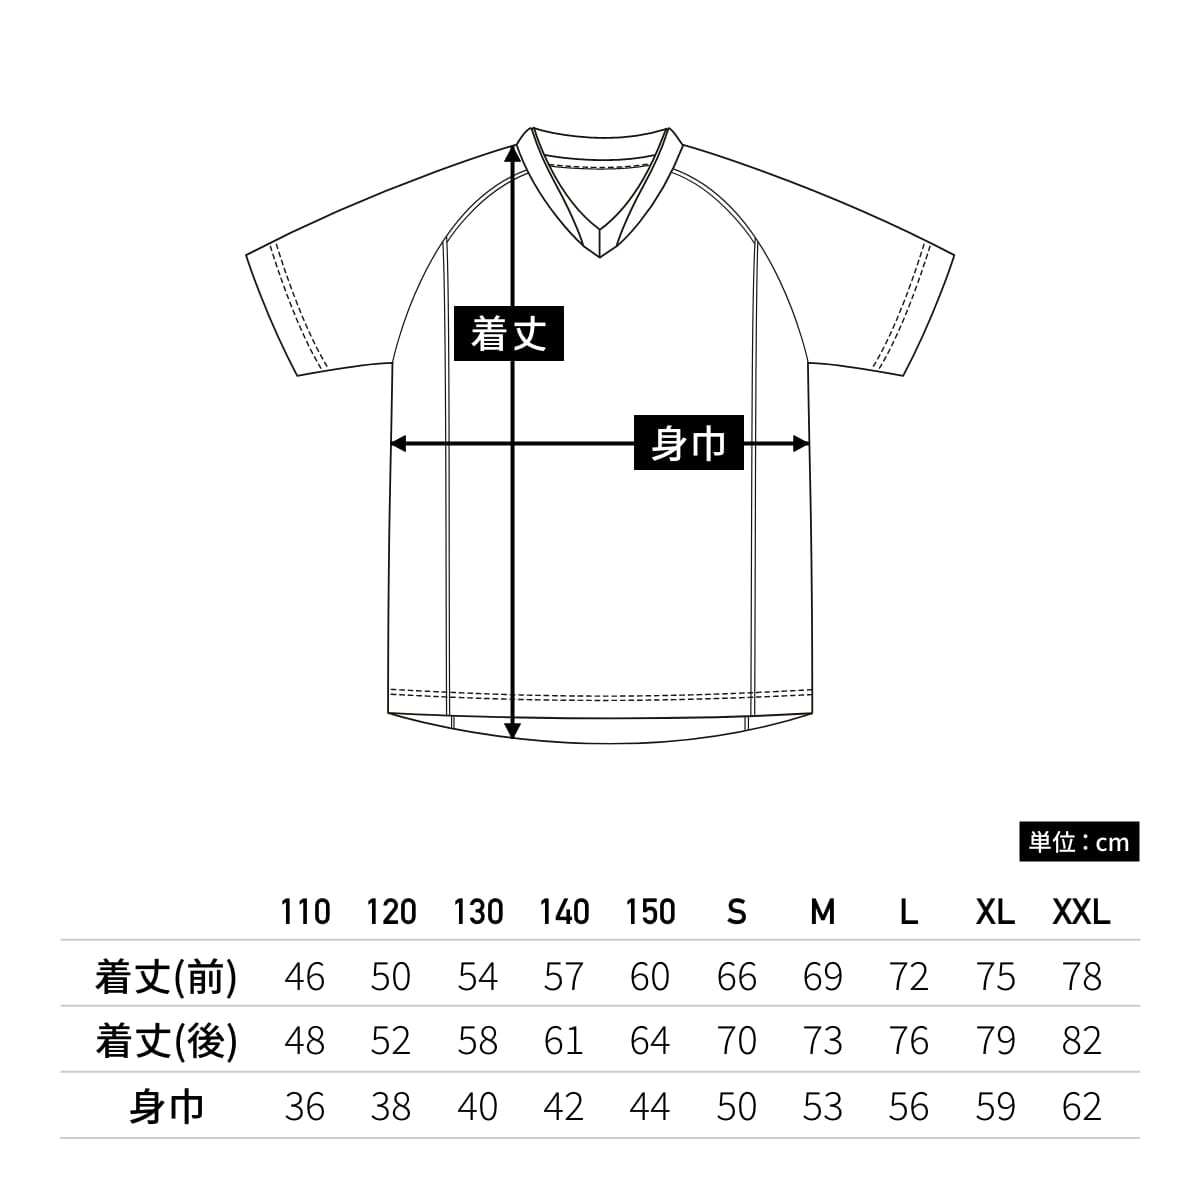 【送料無料】ベーシックサッカーシャツ | ユニフォーム | 1枚 | P1910 | グリーン